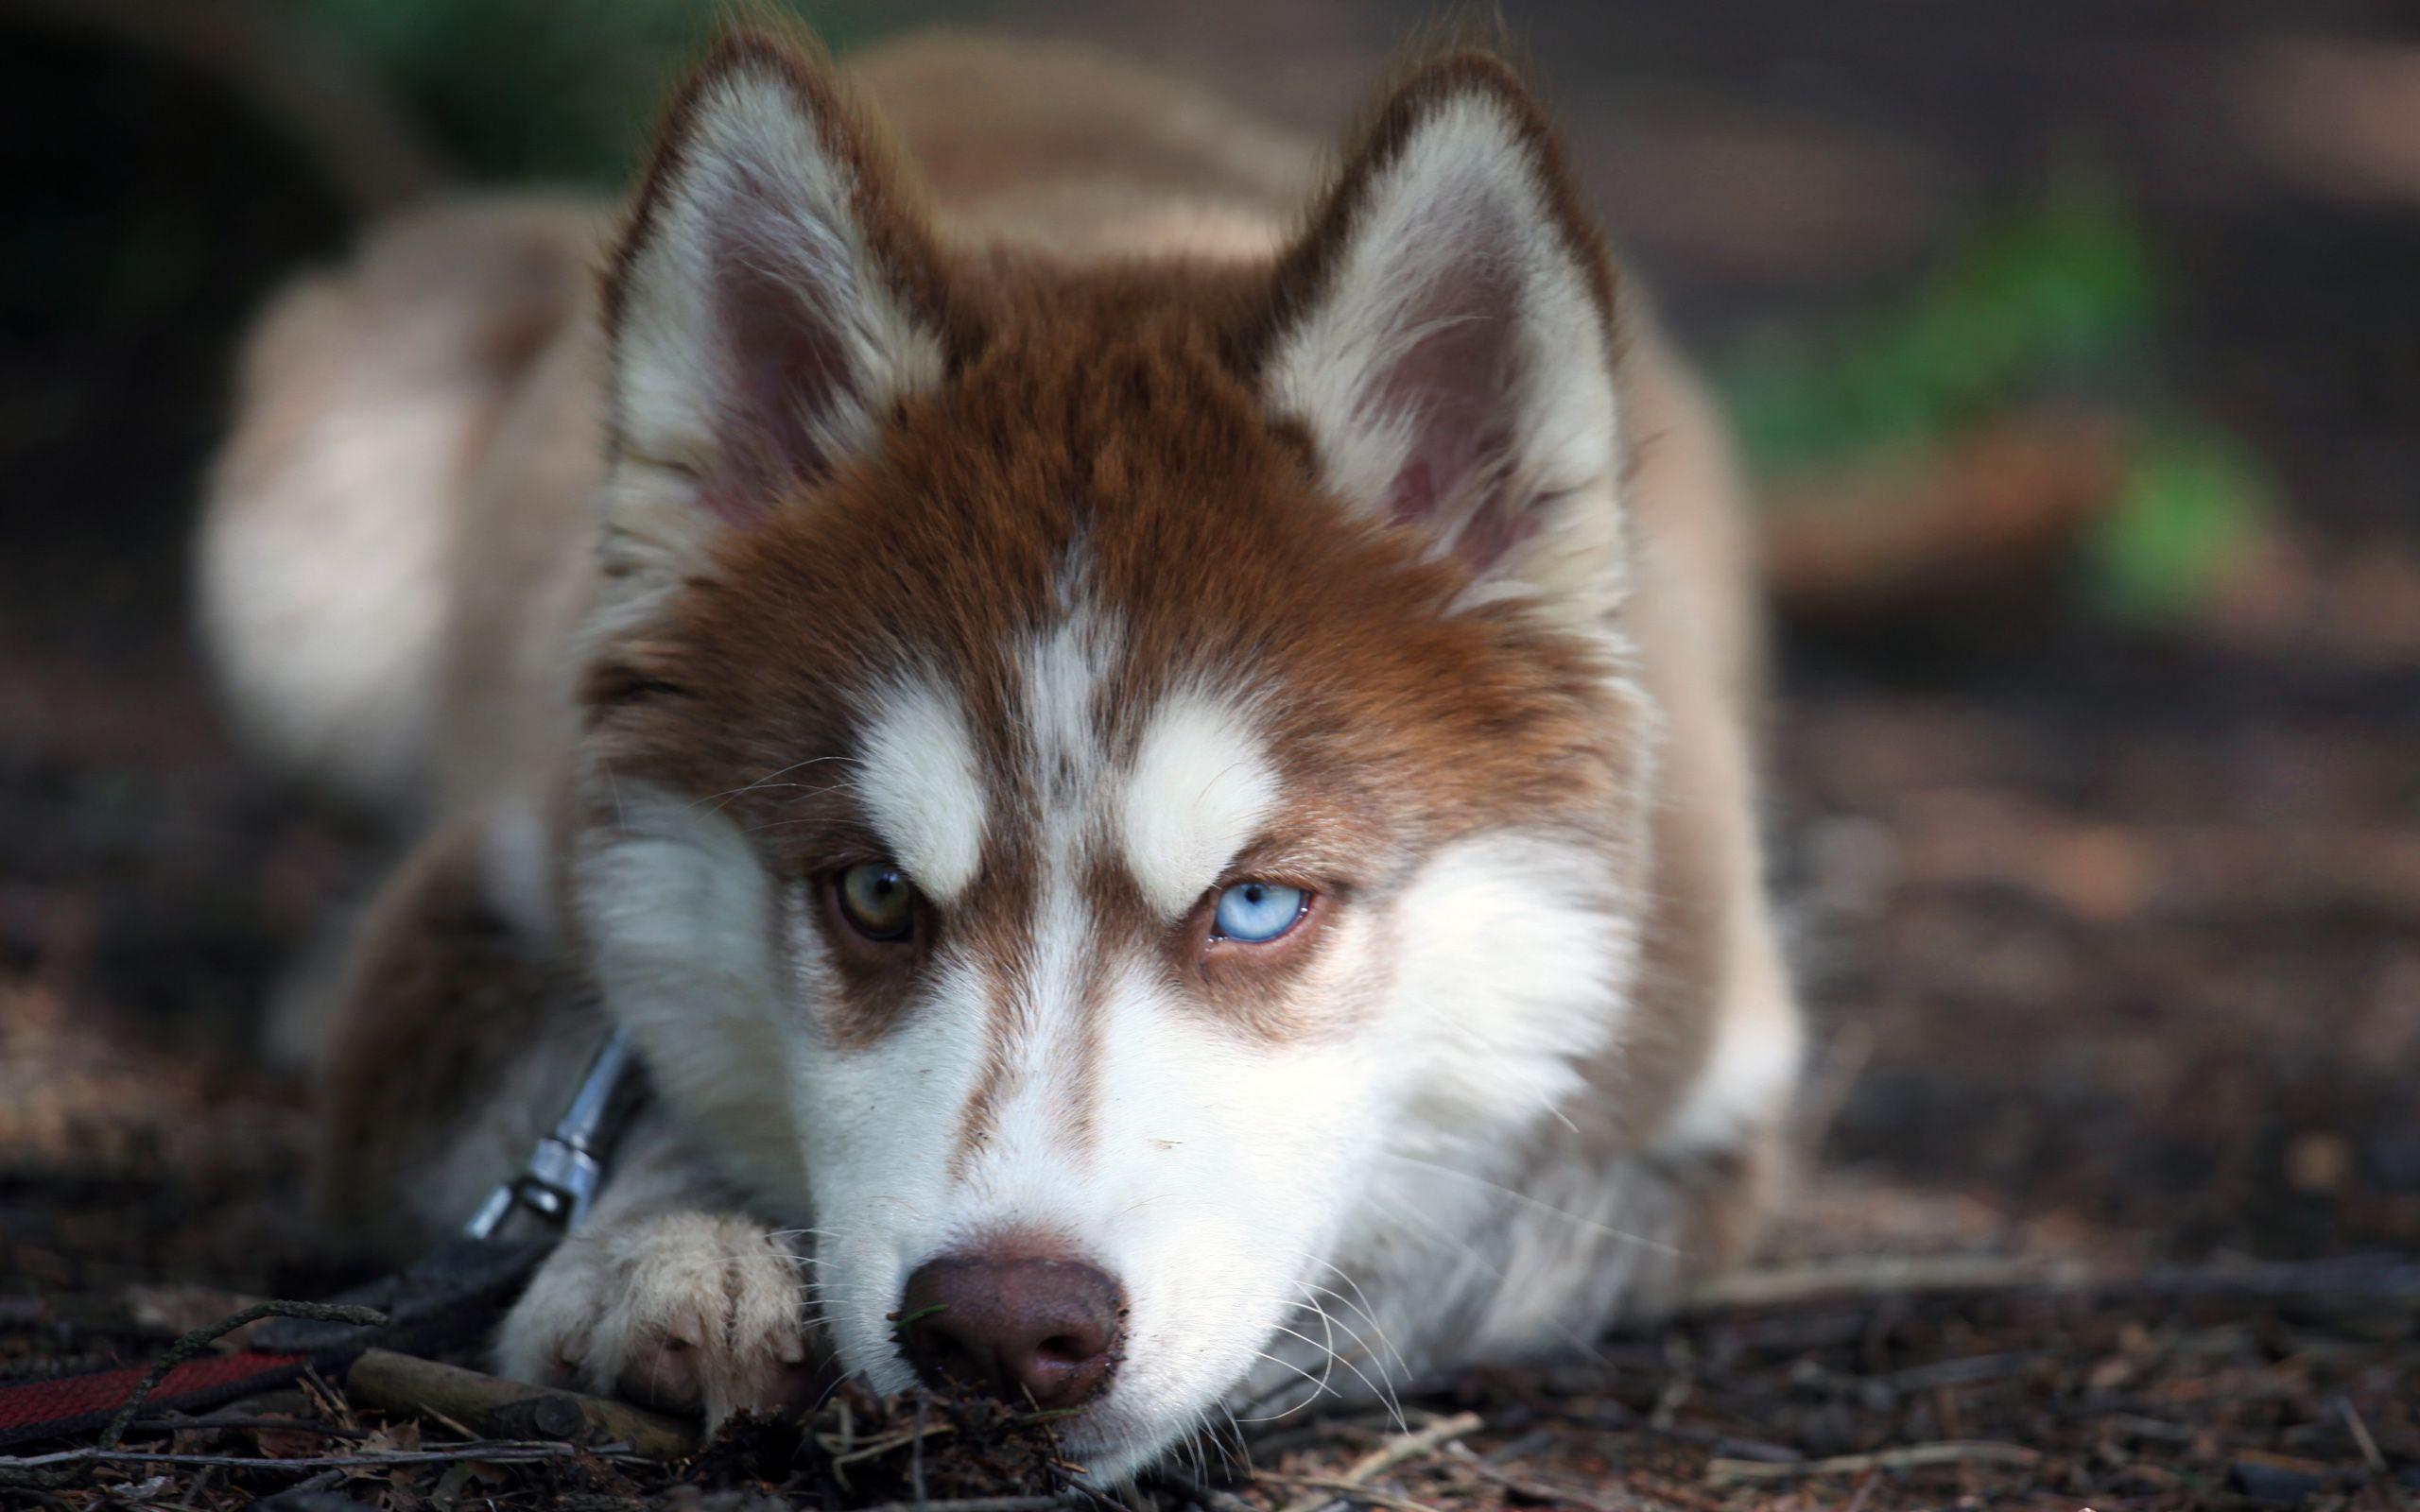 Tiêu Chuẩn Để Lựa Chọn Một Chú Chó Alaska Đẹp - Sieupet.com